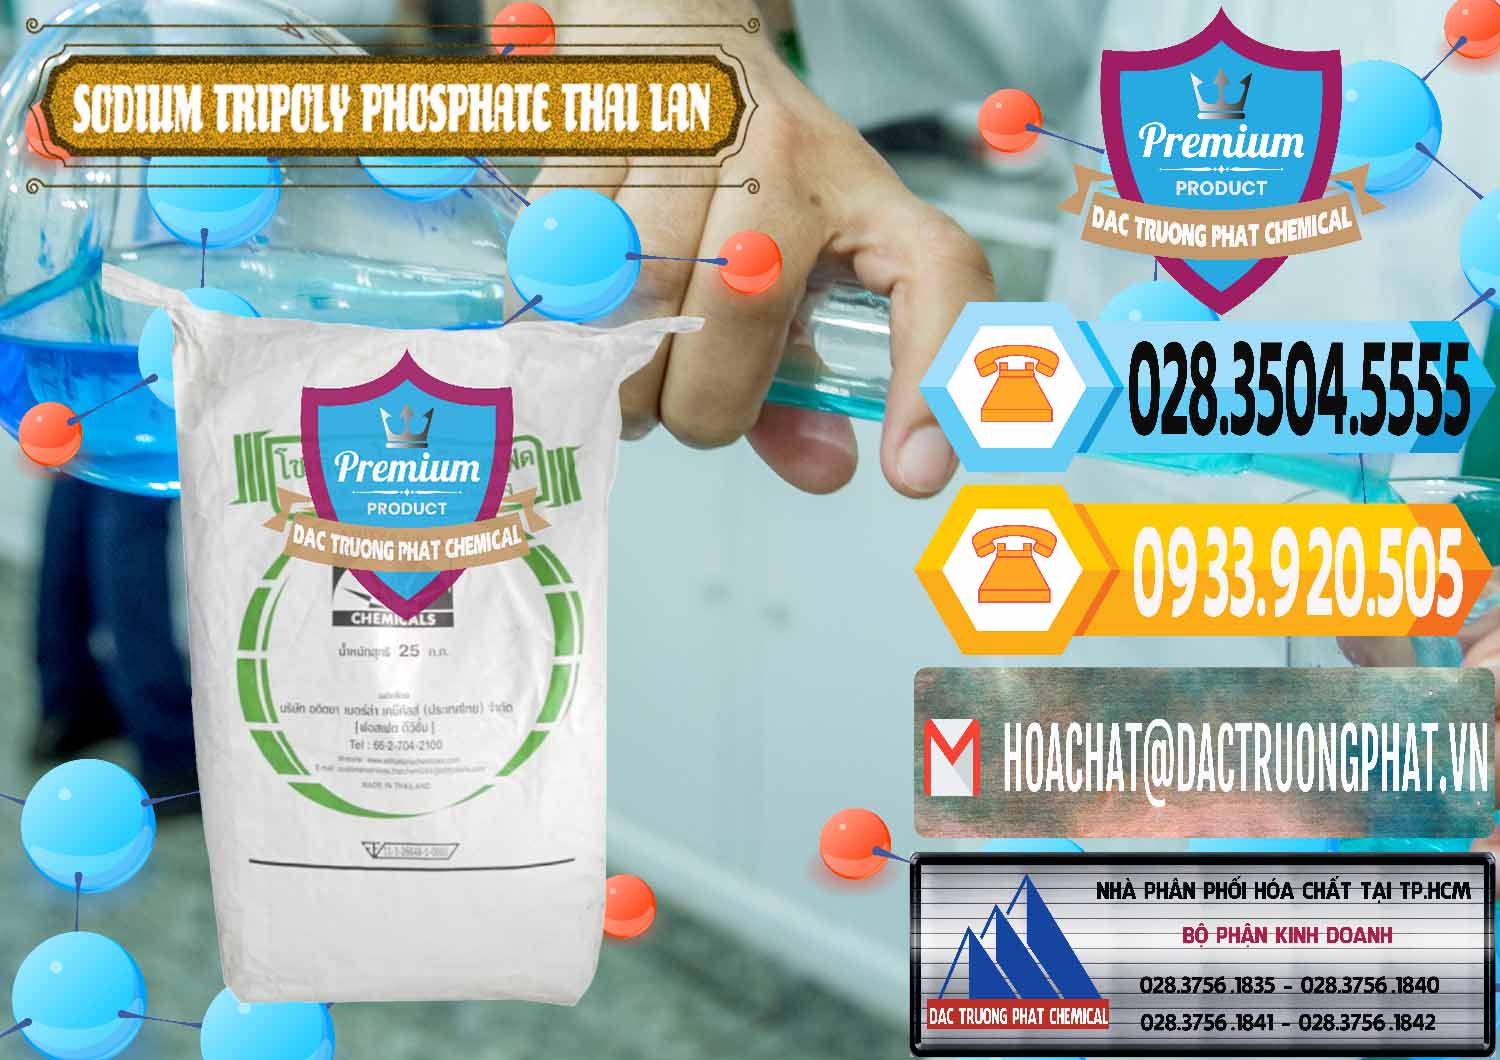 Chuyên kinh doanh - bán Sodium Tripoly Phosphate - STPP Aditya Birla Grasim Thái Lan Thailand - 0421 - Nhà cung ứng và phân phối hóa chất tại TP.HCM - hoachattayrua.net